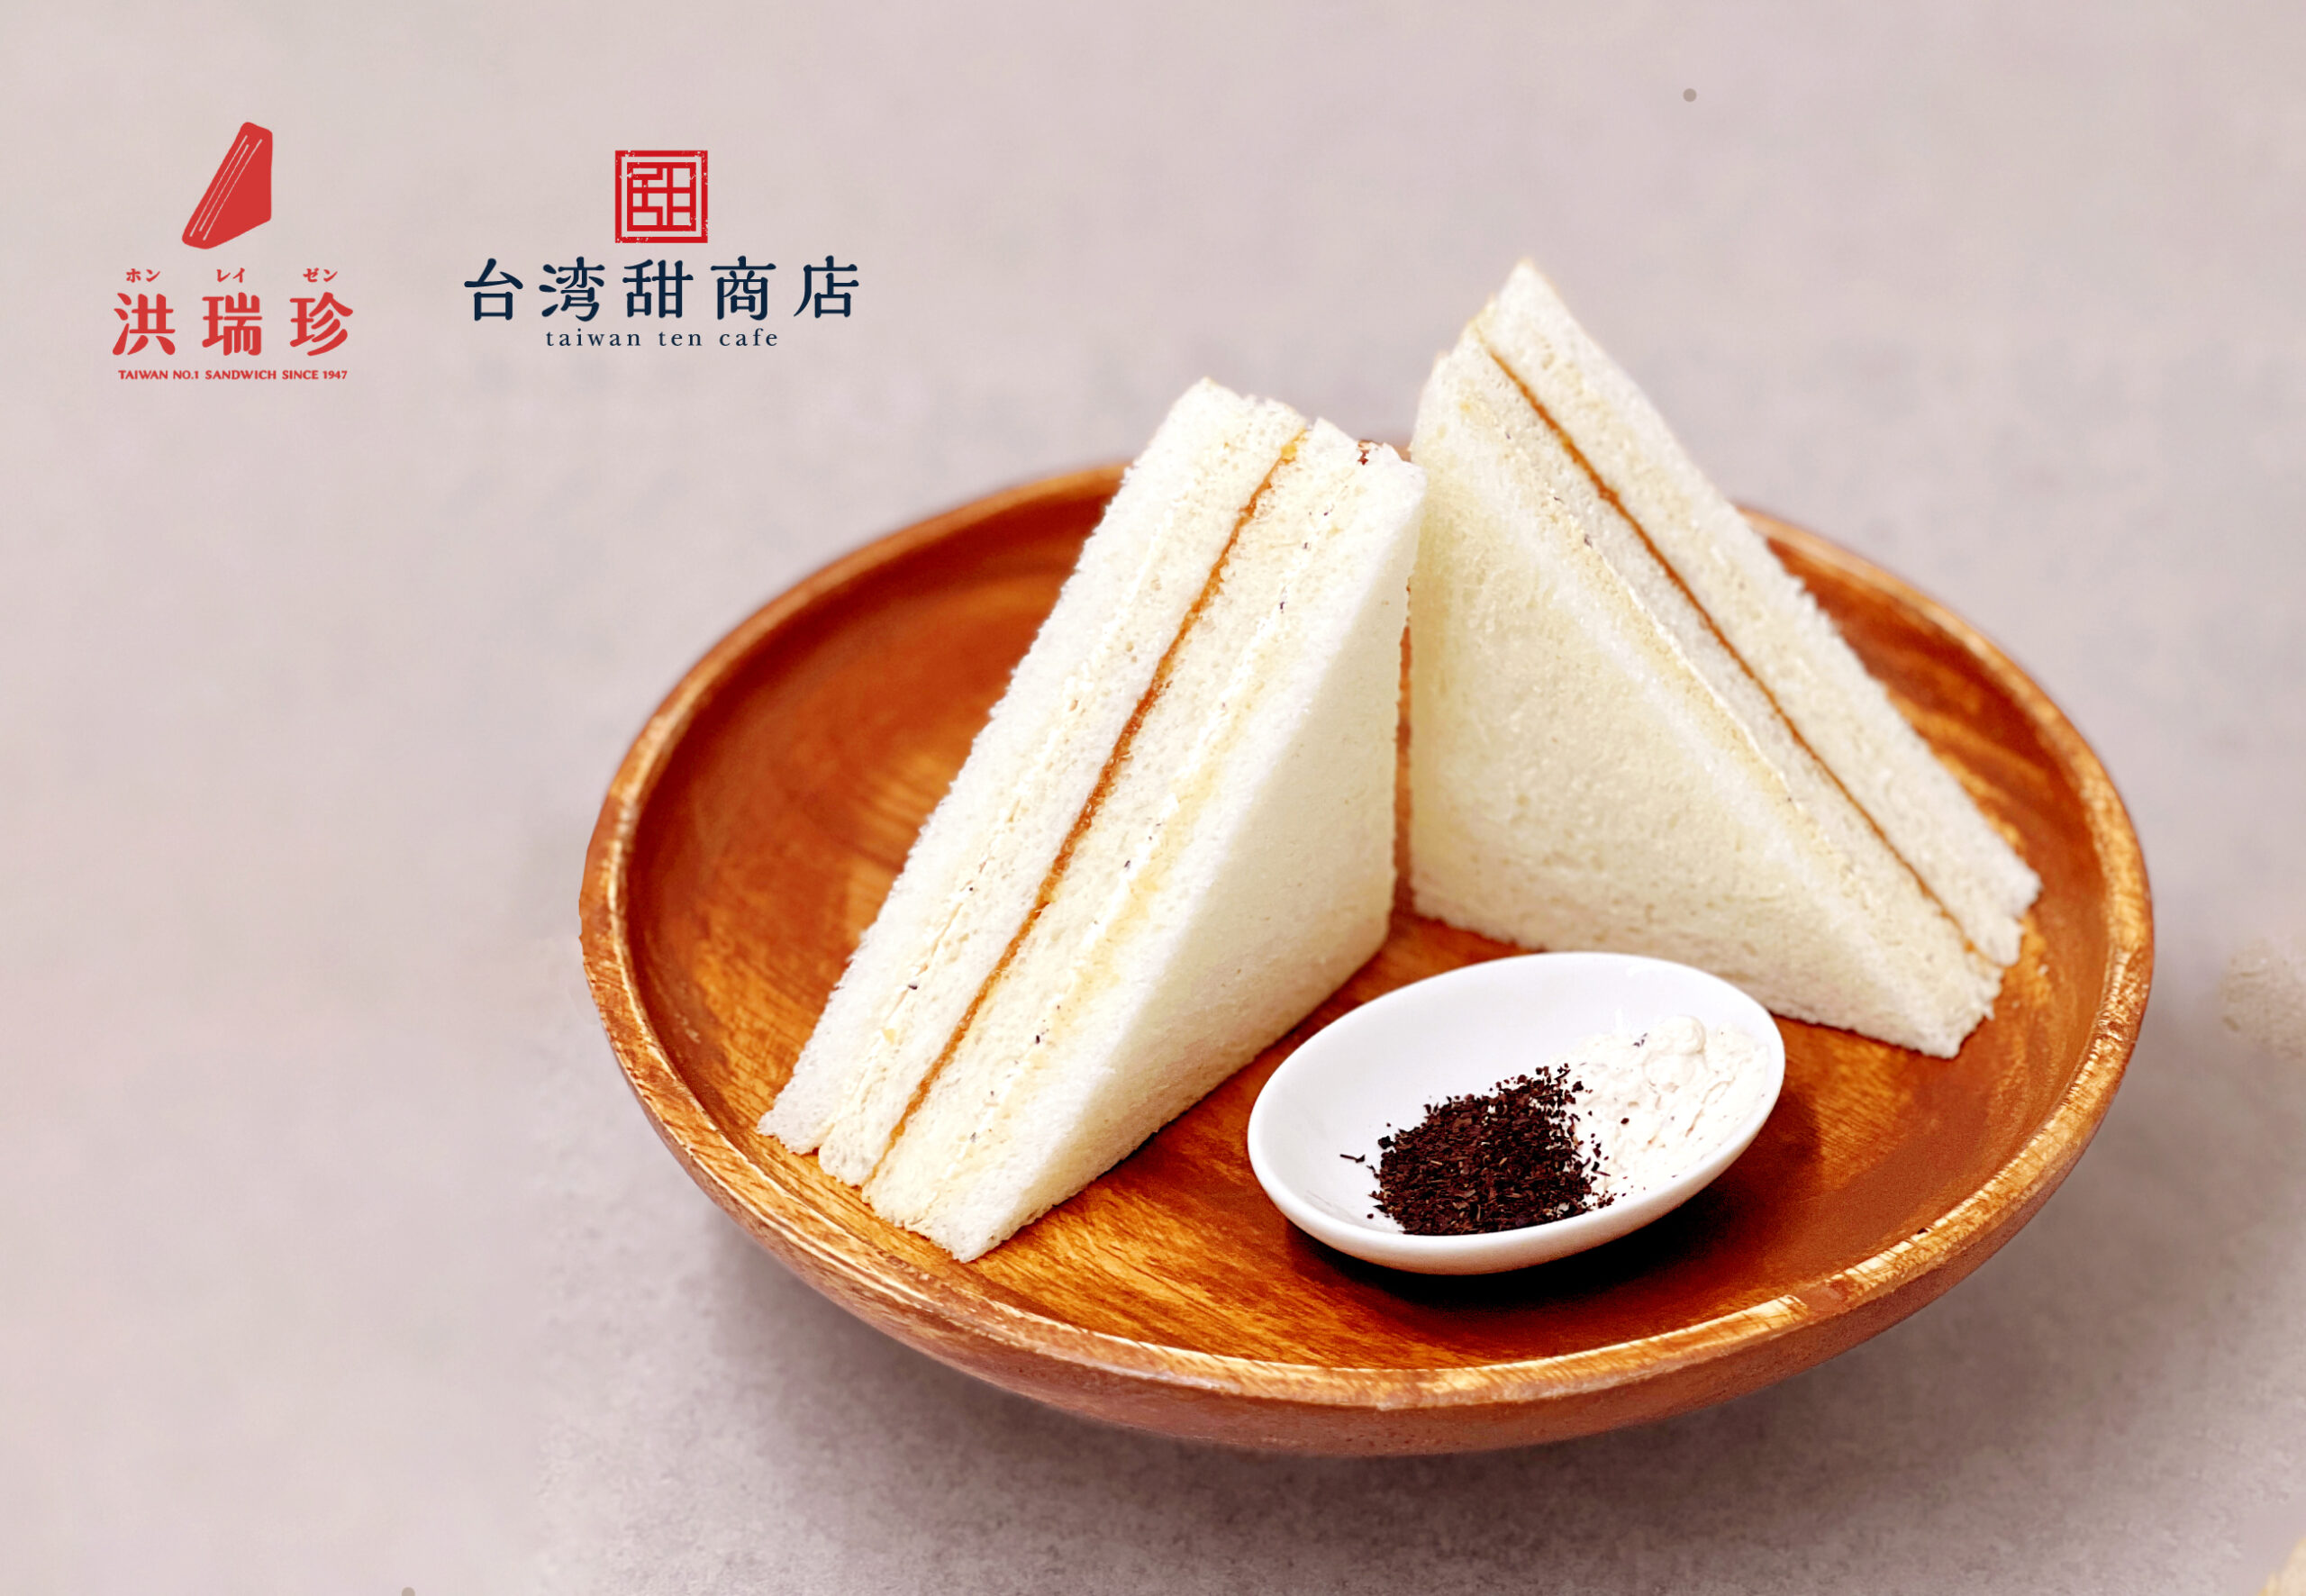 台湾人気No.1サンドイッチ「洪瑞珍（ホンレイゼン）」との初コラボを記念し、限定サンドイッチ販売のお知らせ